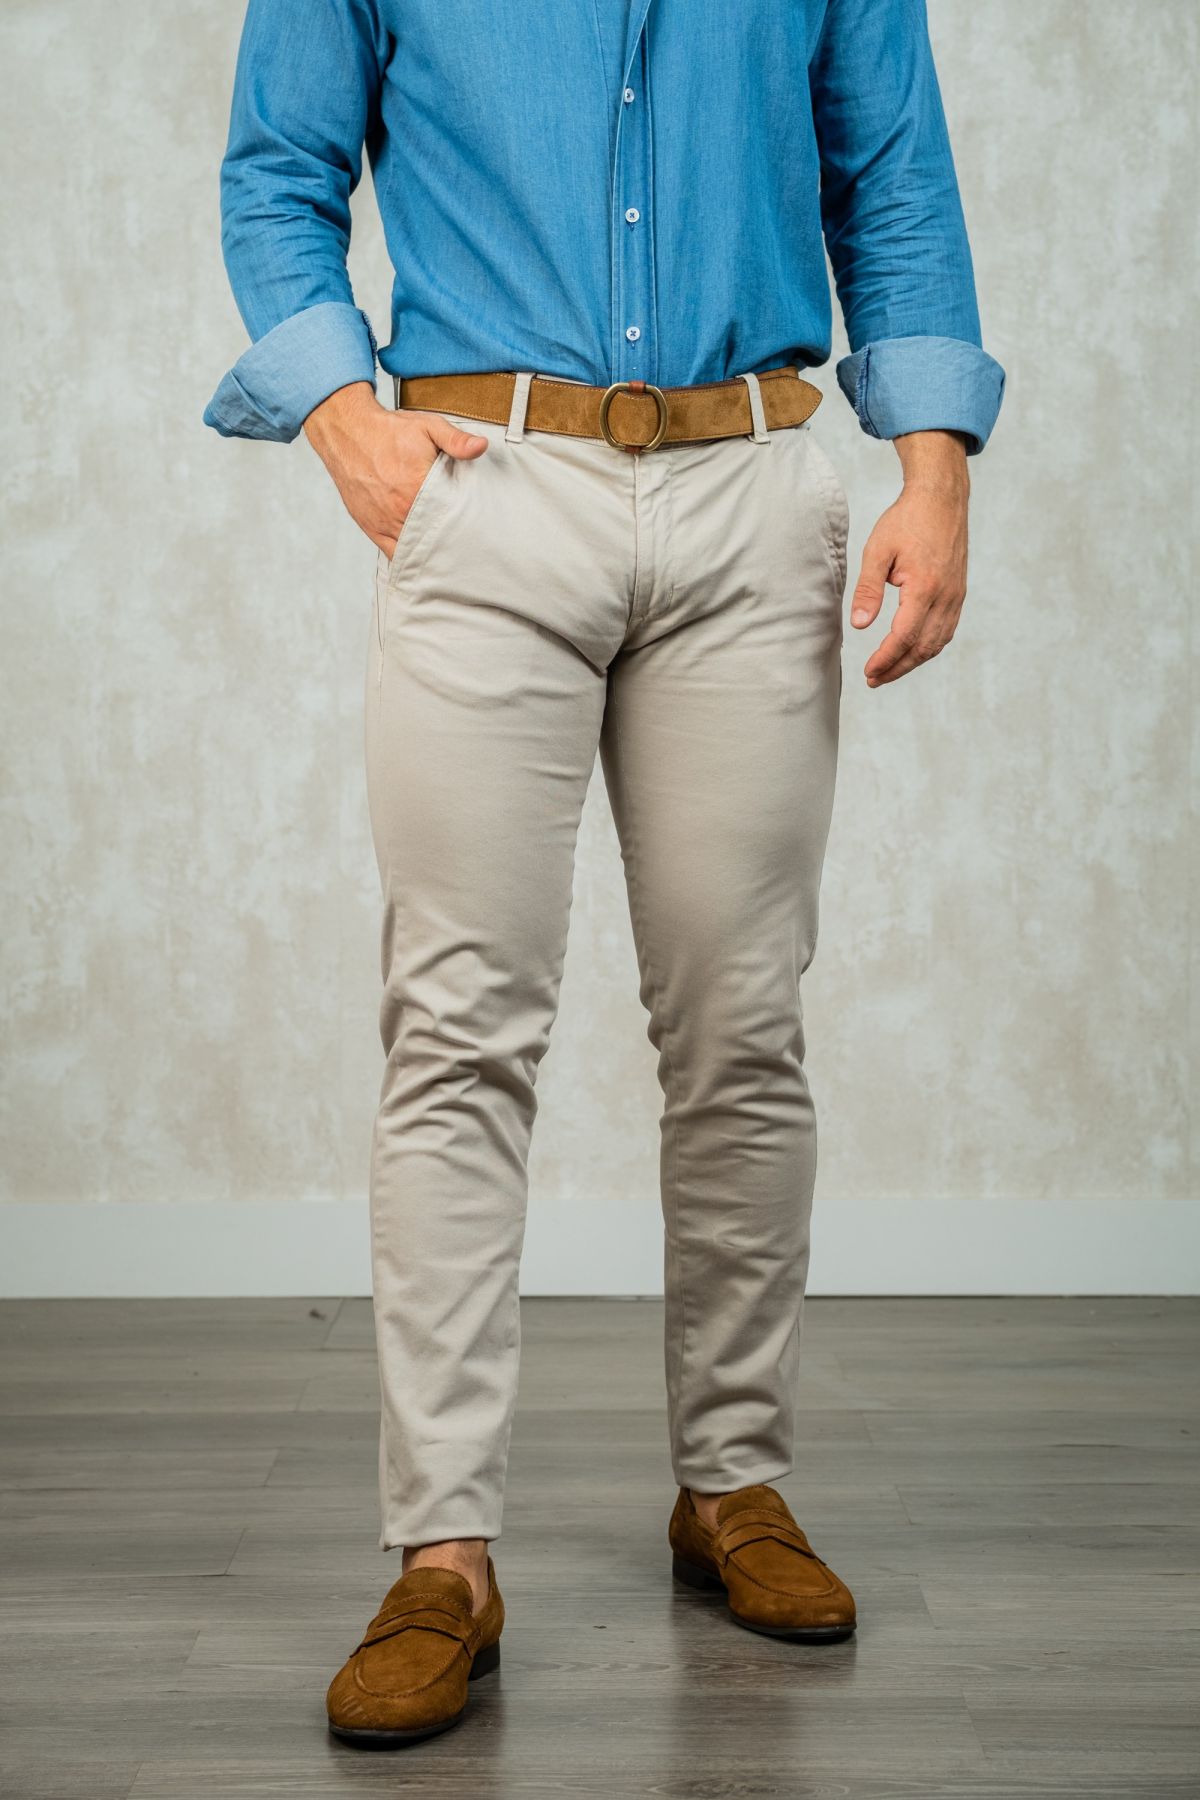 Los pantalones chinos skinny con patrón vivo y color hueso son un estilo de pantalón ajustado al cuerpo con un corte estrecho en las piernas. El color hueso es un tono de color crema o blanco suave, que es versátil y se puede combinar con una variedad de 